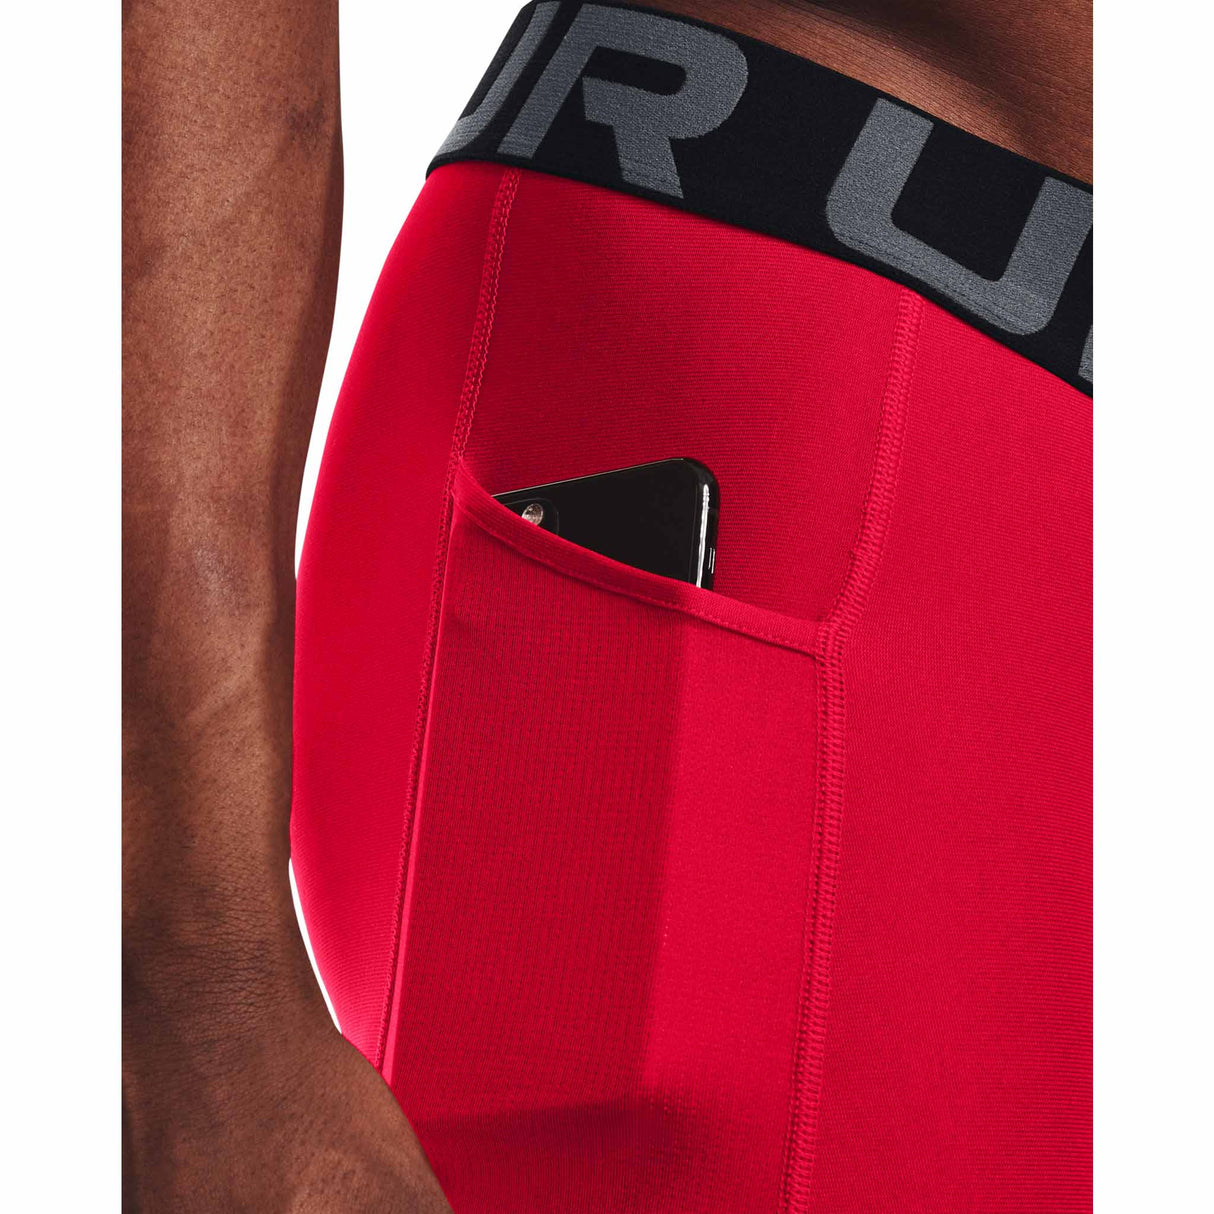 Under Armour HeatGear Shorts de compression homme pochette -rouge / blanc